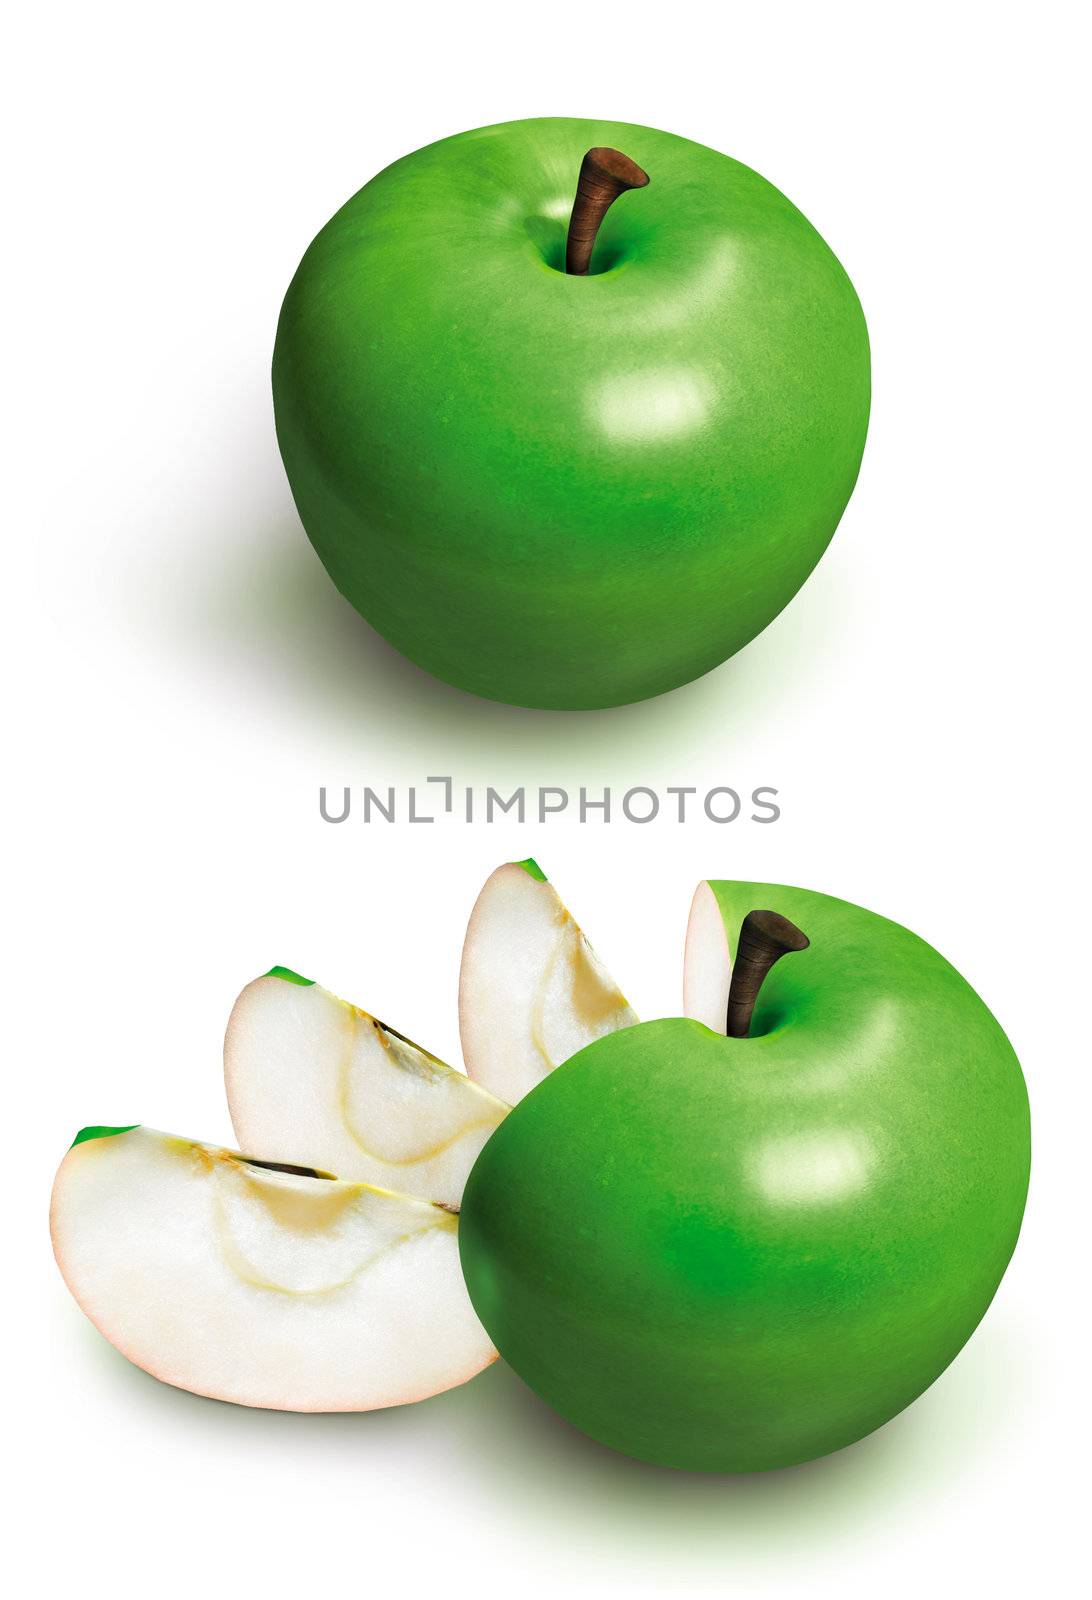 Sliced green 3D apple